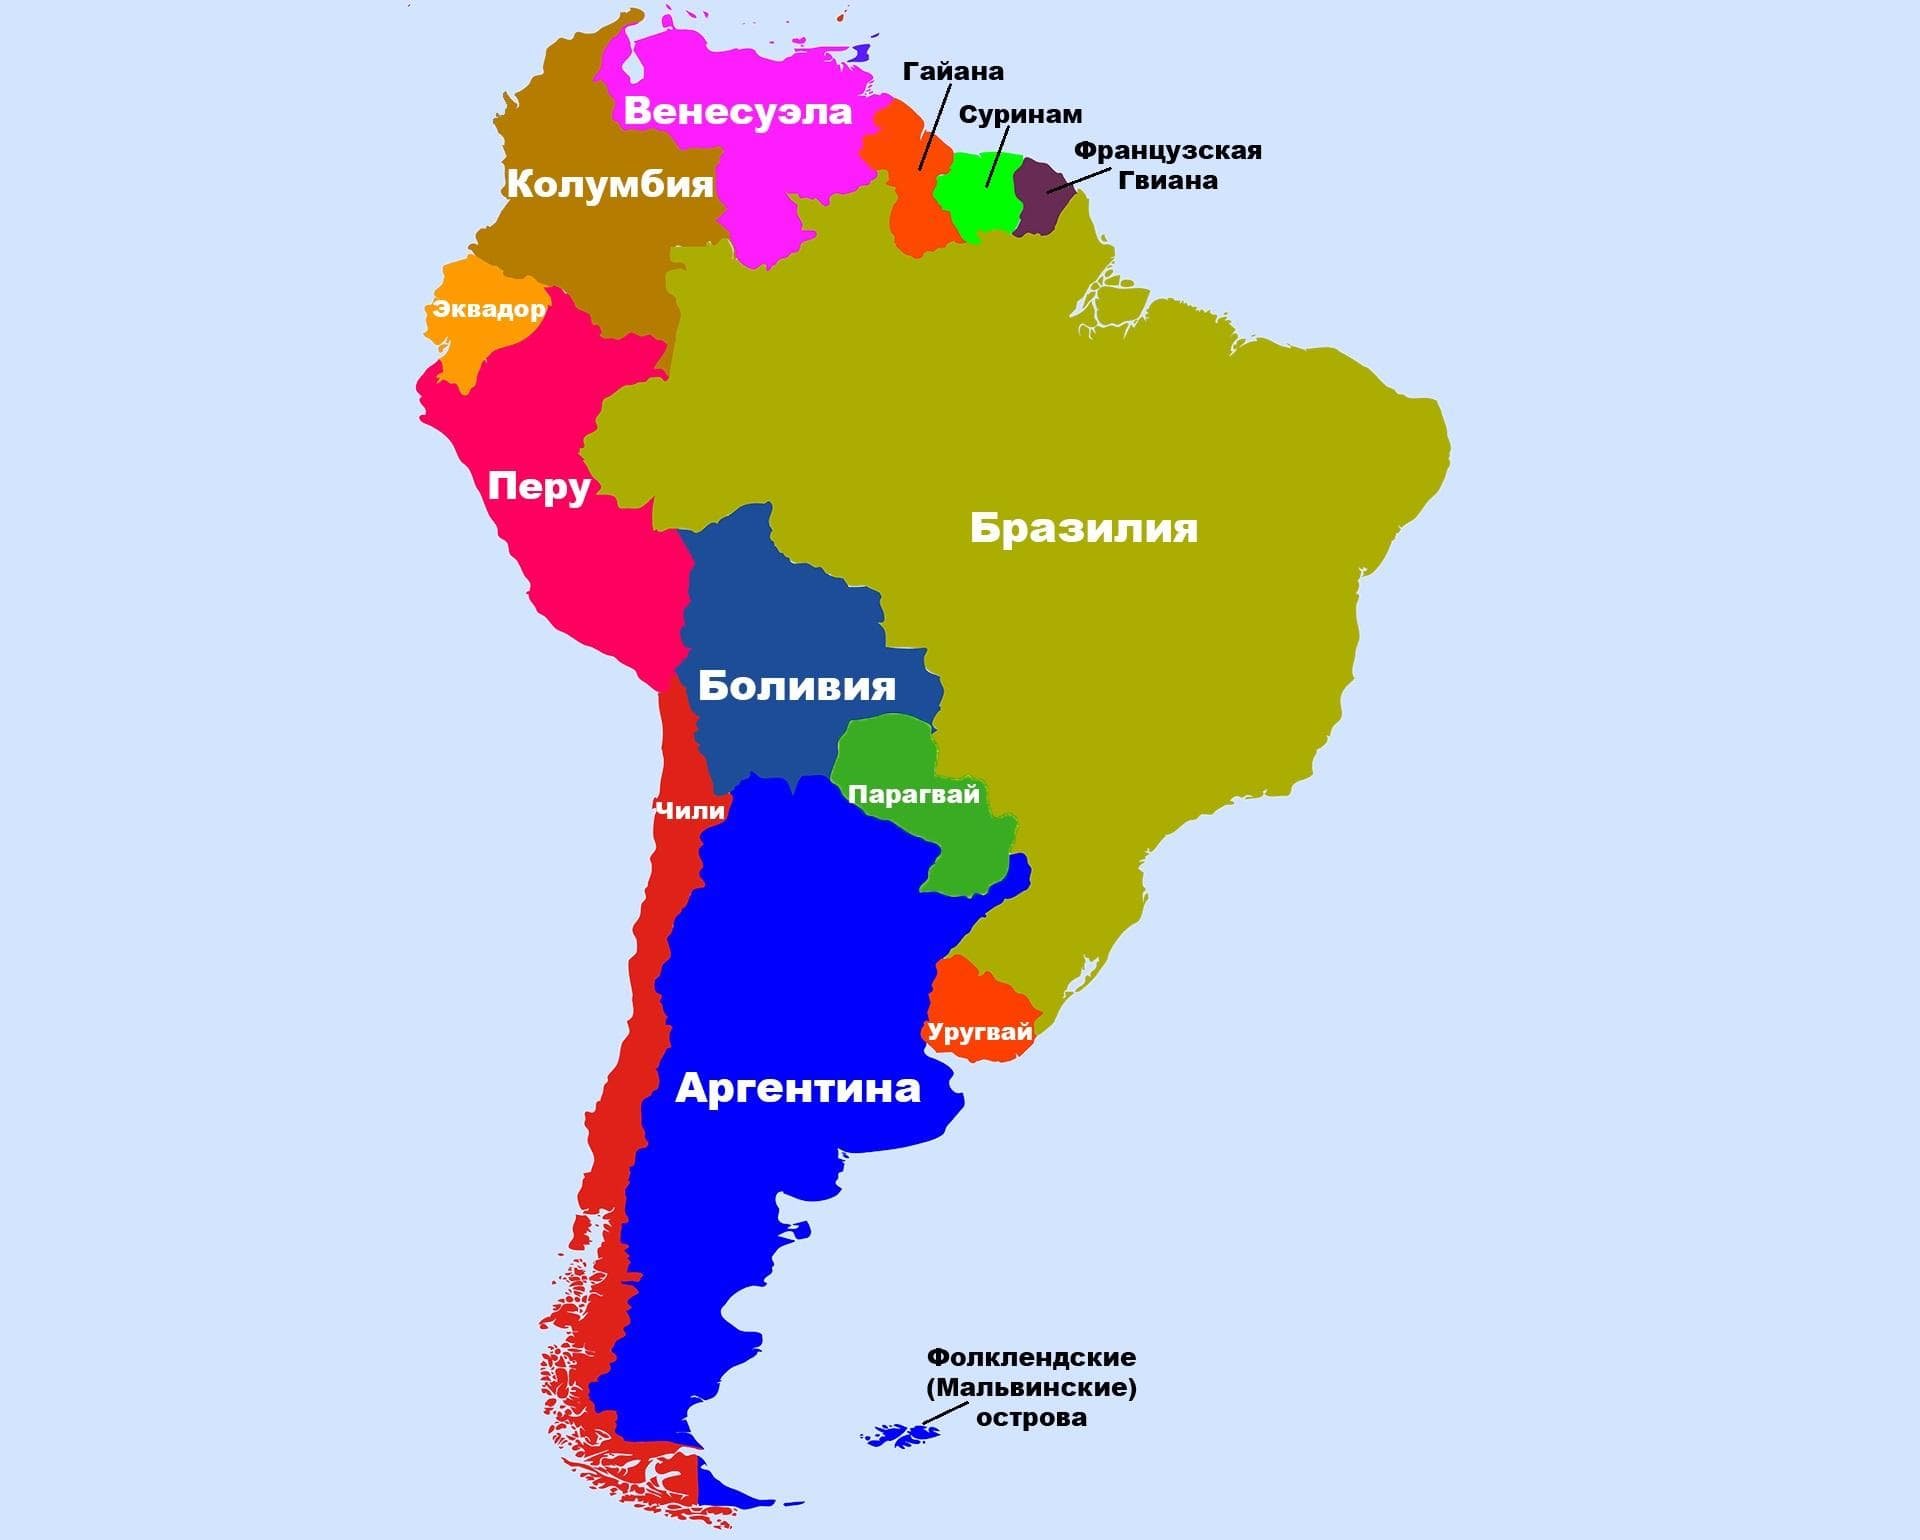 Карта Южной Америки политическая на русском языке со странами. Южная Америка на карте со странами и столицами на русском. Политическая карта Южной Америки со столицами. Южная Америка политическая карта на русском. Местоположение южной америки